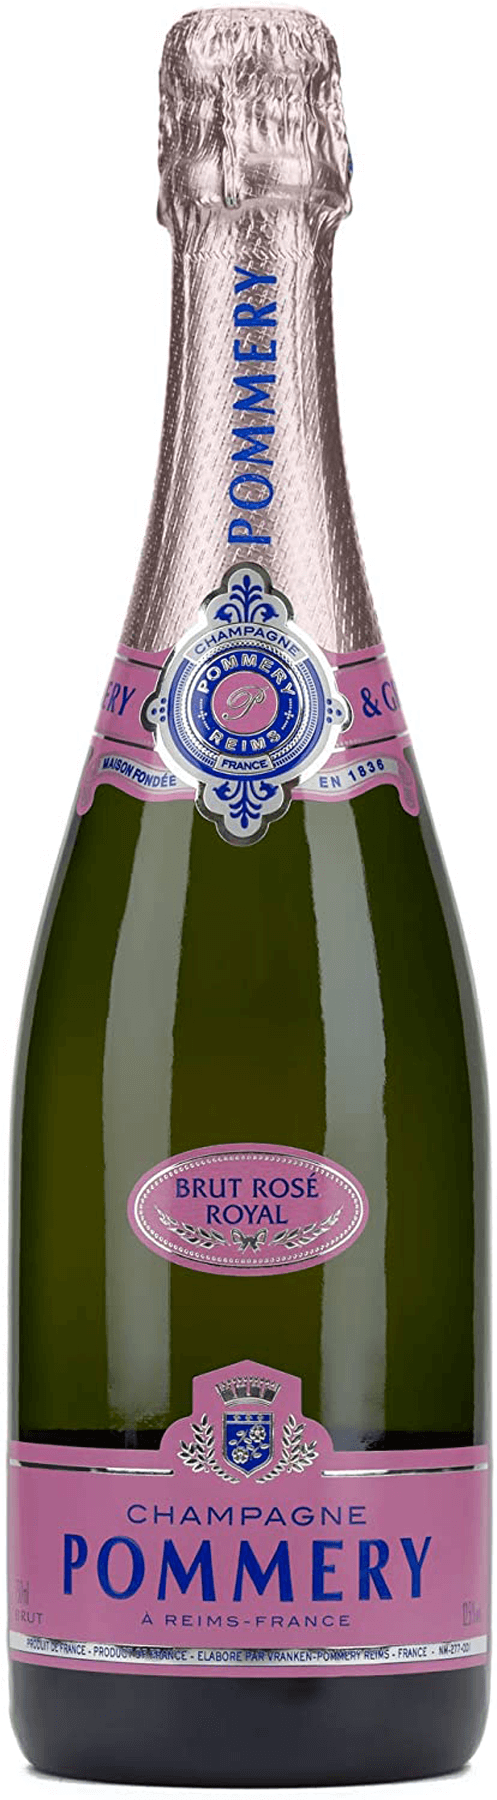 Liter Pommery Champagner Brut Rose Royal 0,75